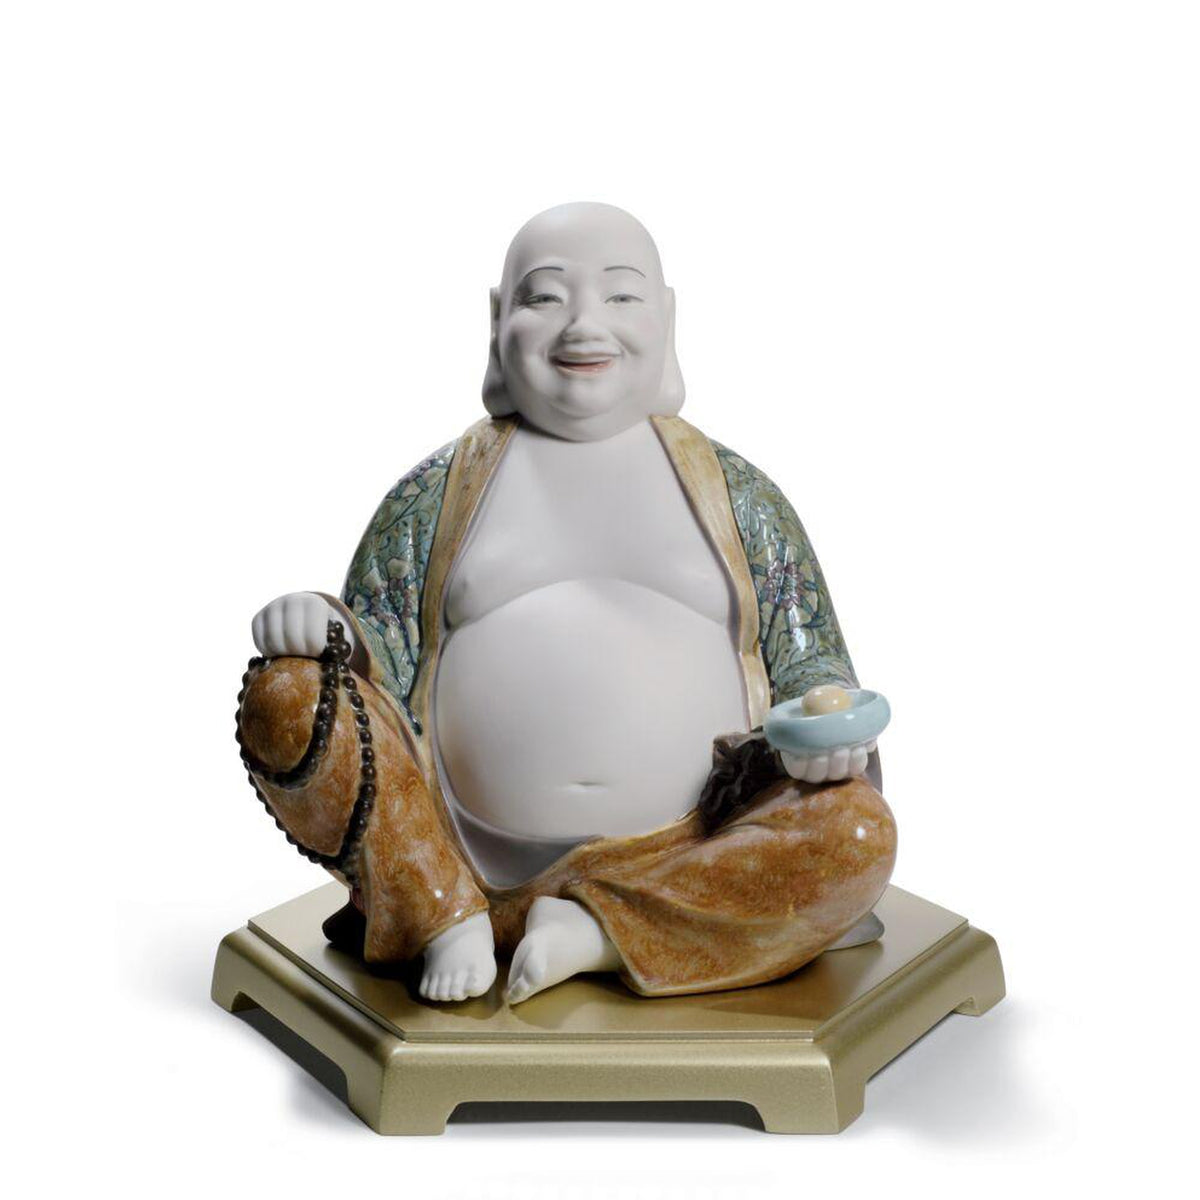 Somebody gave my alt buddha